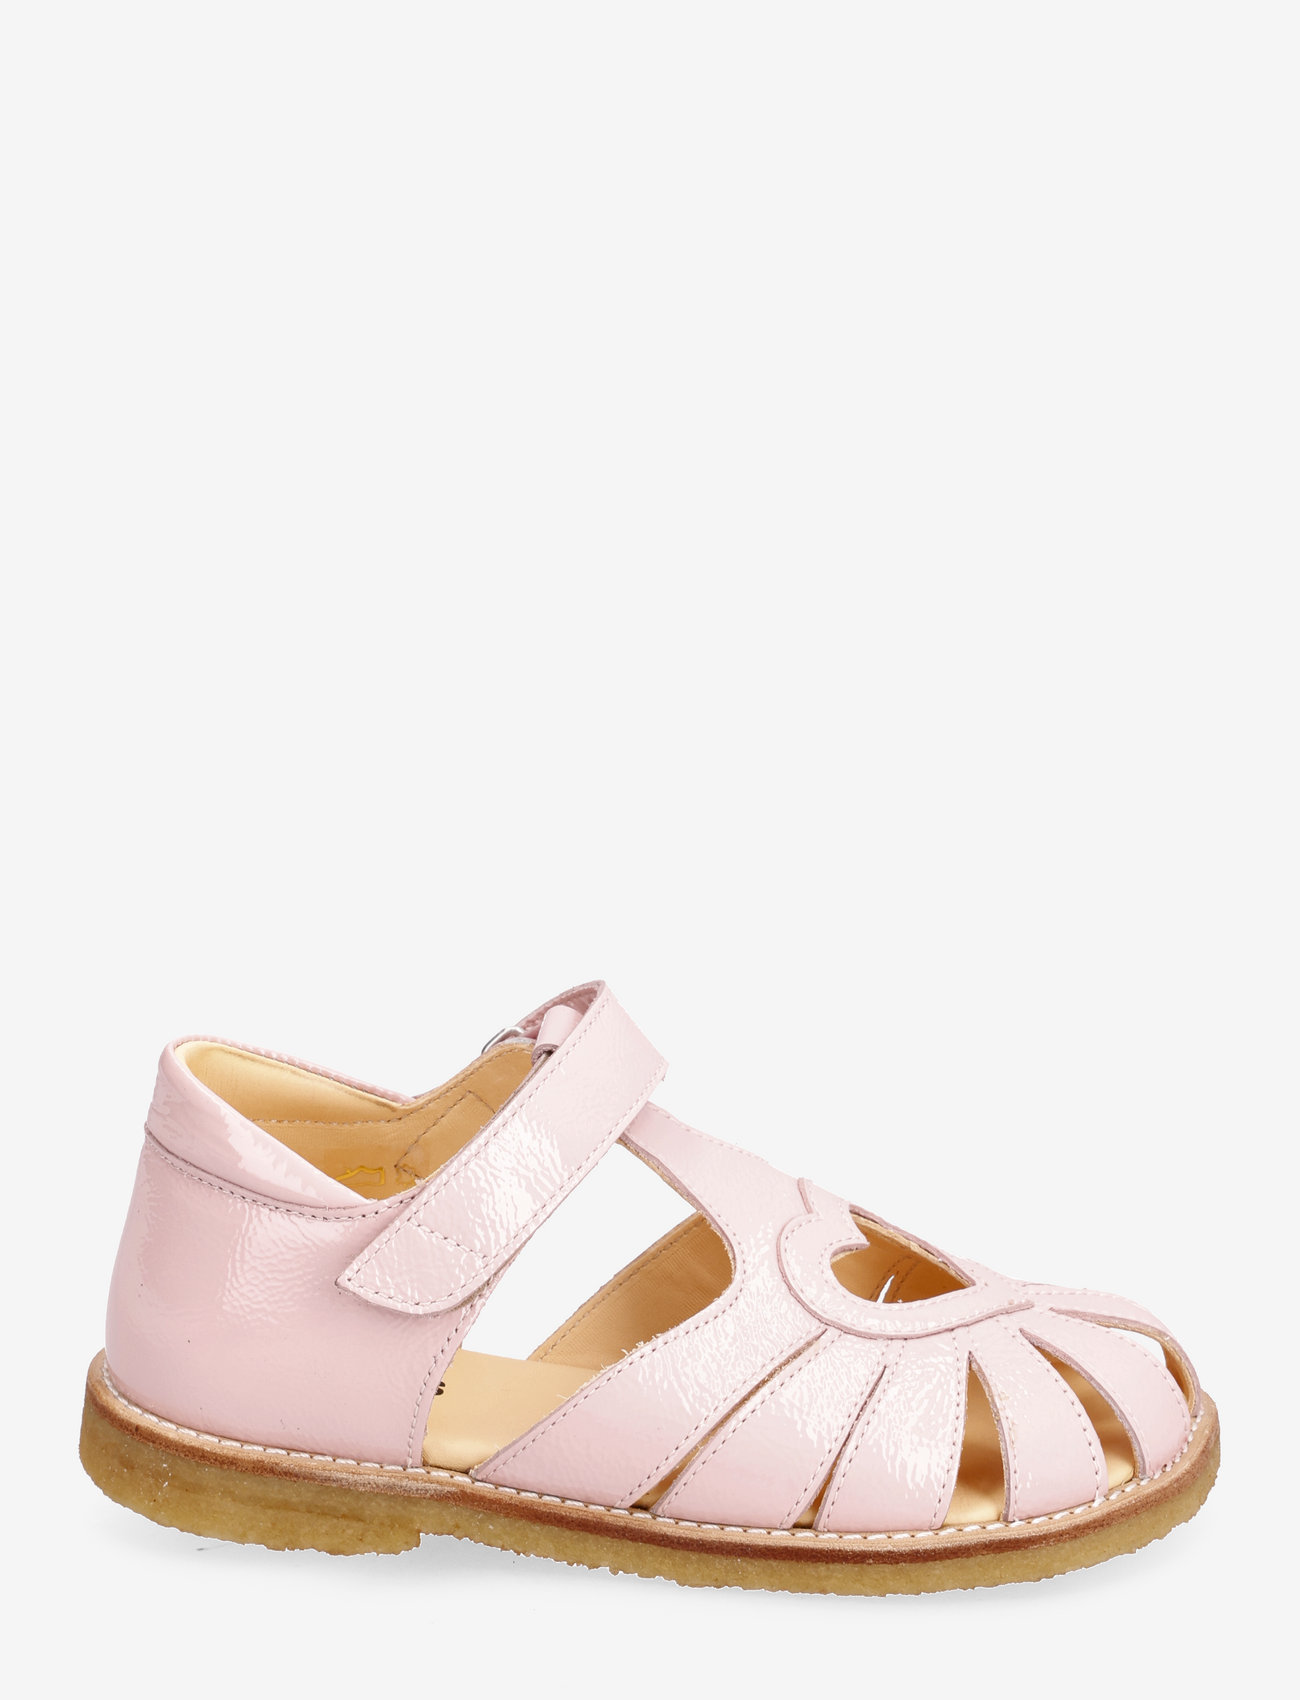 ANGULUS - Sandals - flat - closed toe - - summer savings - 1303 rosa - 1